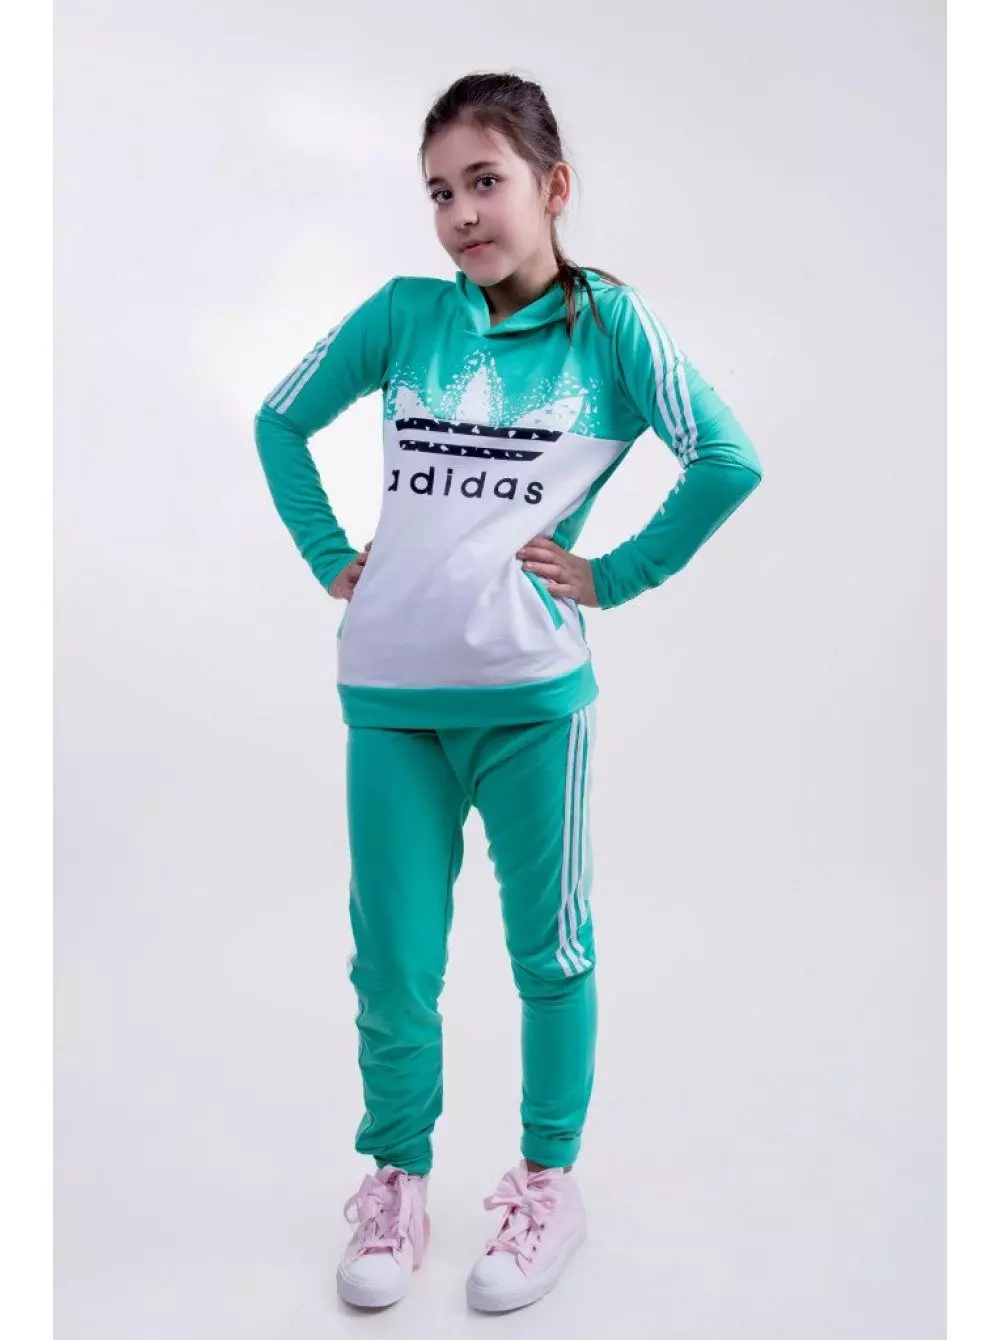 एडिडास स्पोर्ट्स सूट (100 फोटो): महिला और बच्चों के खेल सूट, एडिडास पोर्श डिजाइन, प्रदर्शन और रियल मैड्रिड 1388_26